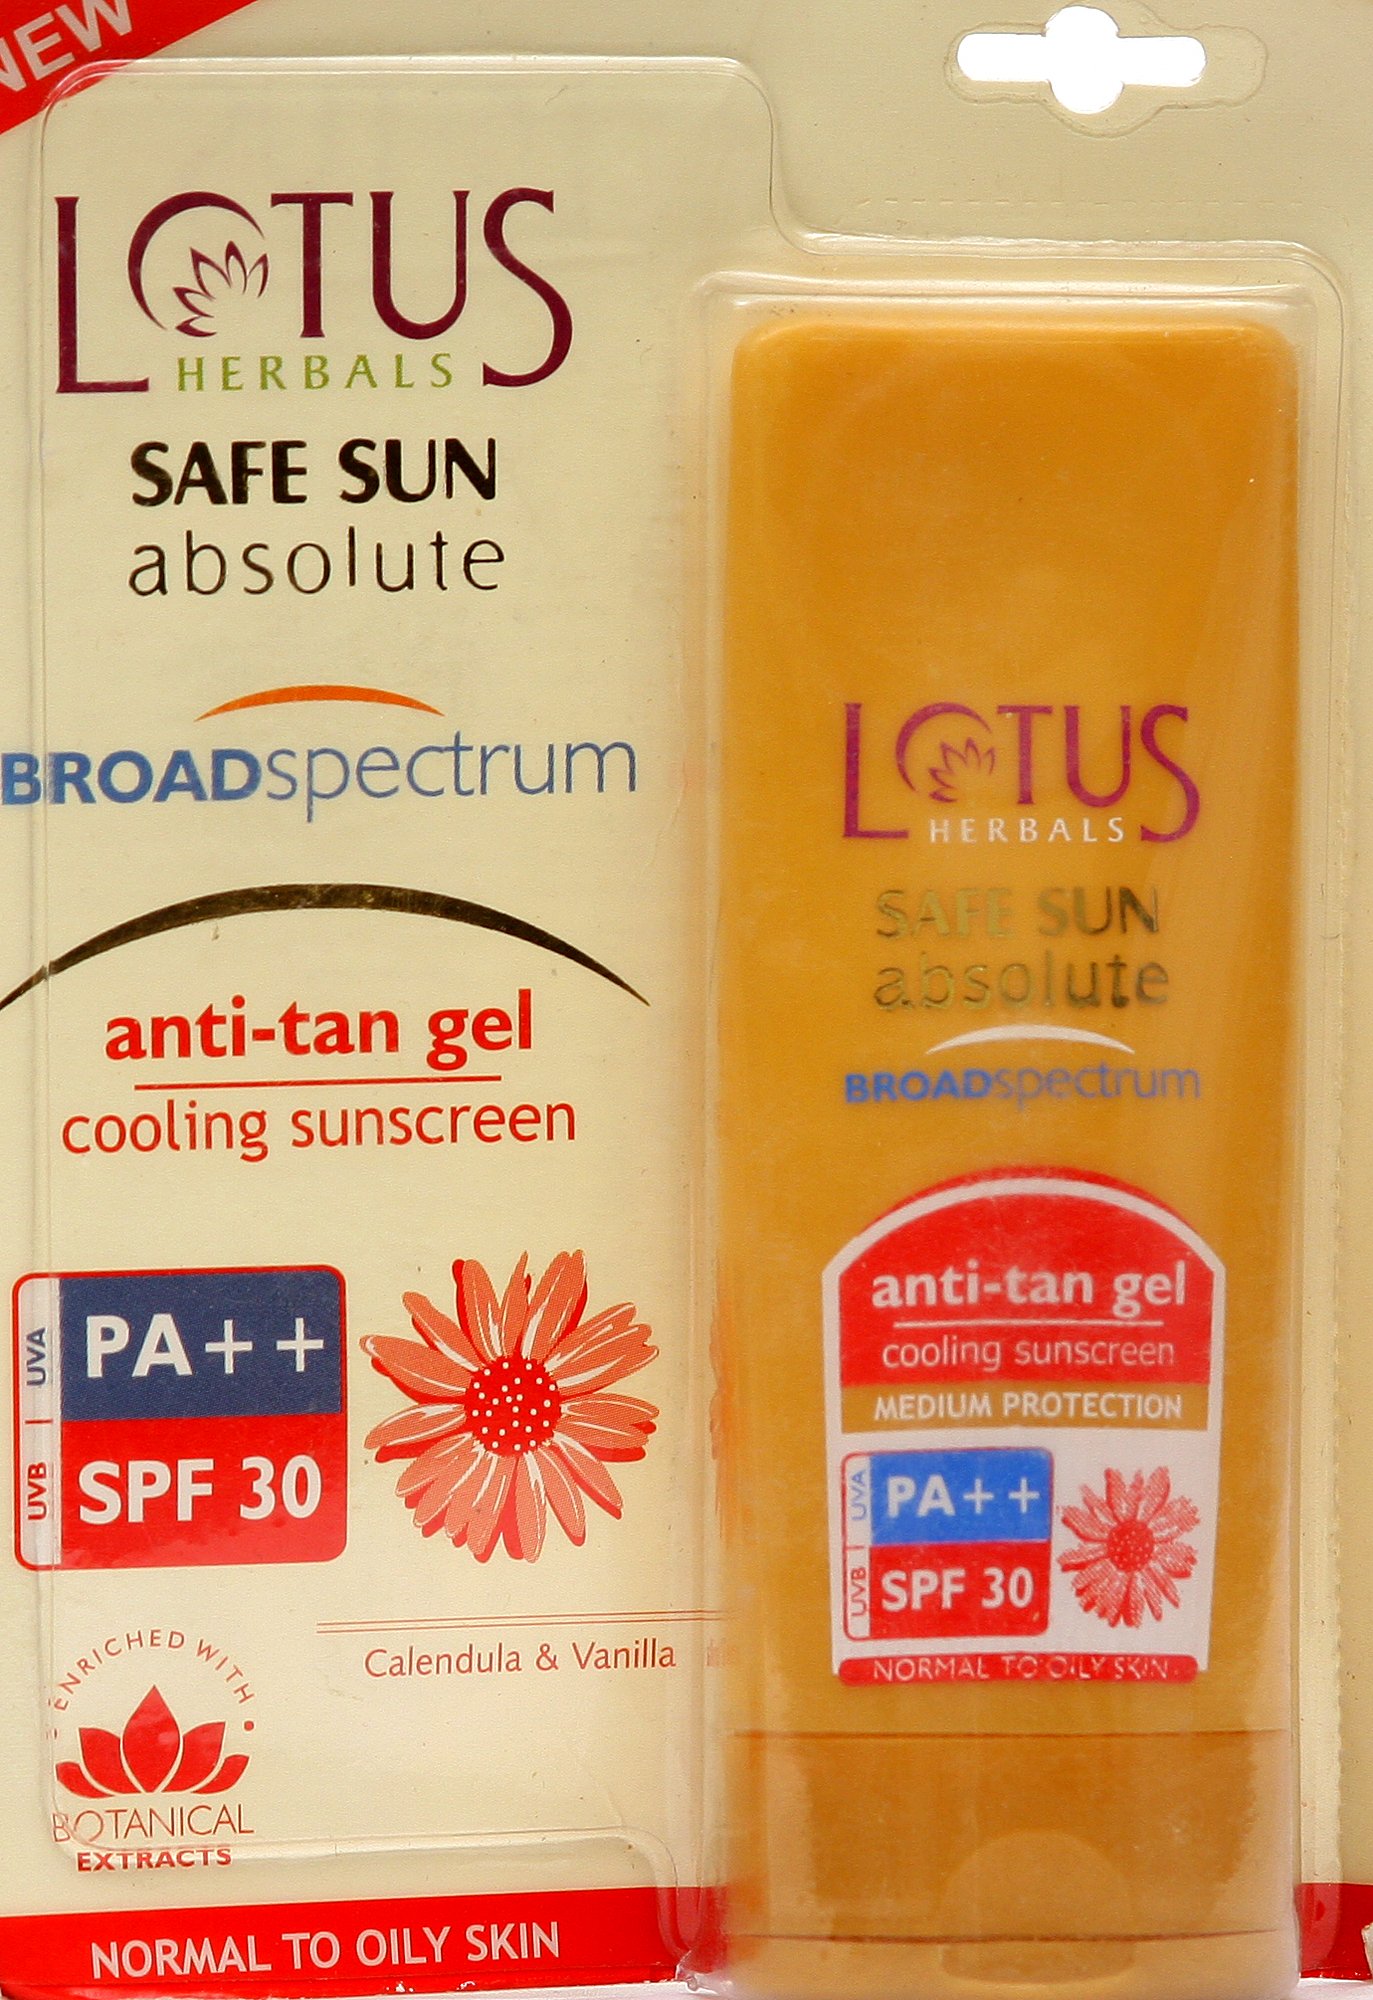 Lotus Herbals Safe Sun Absolute Broad Spectrum Anti-Tan Gel - book cover